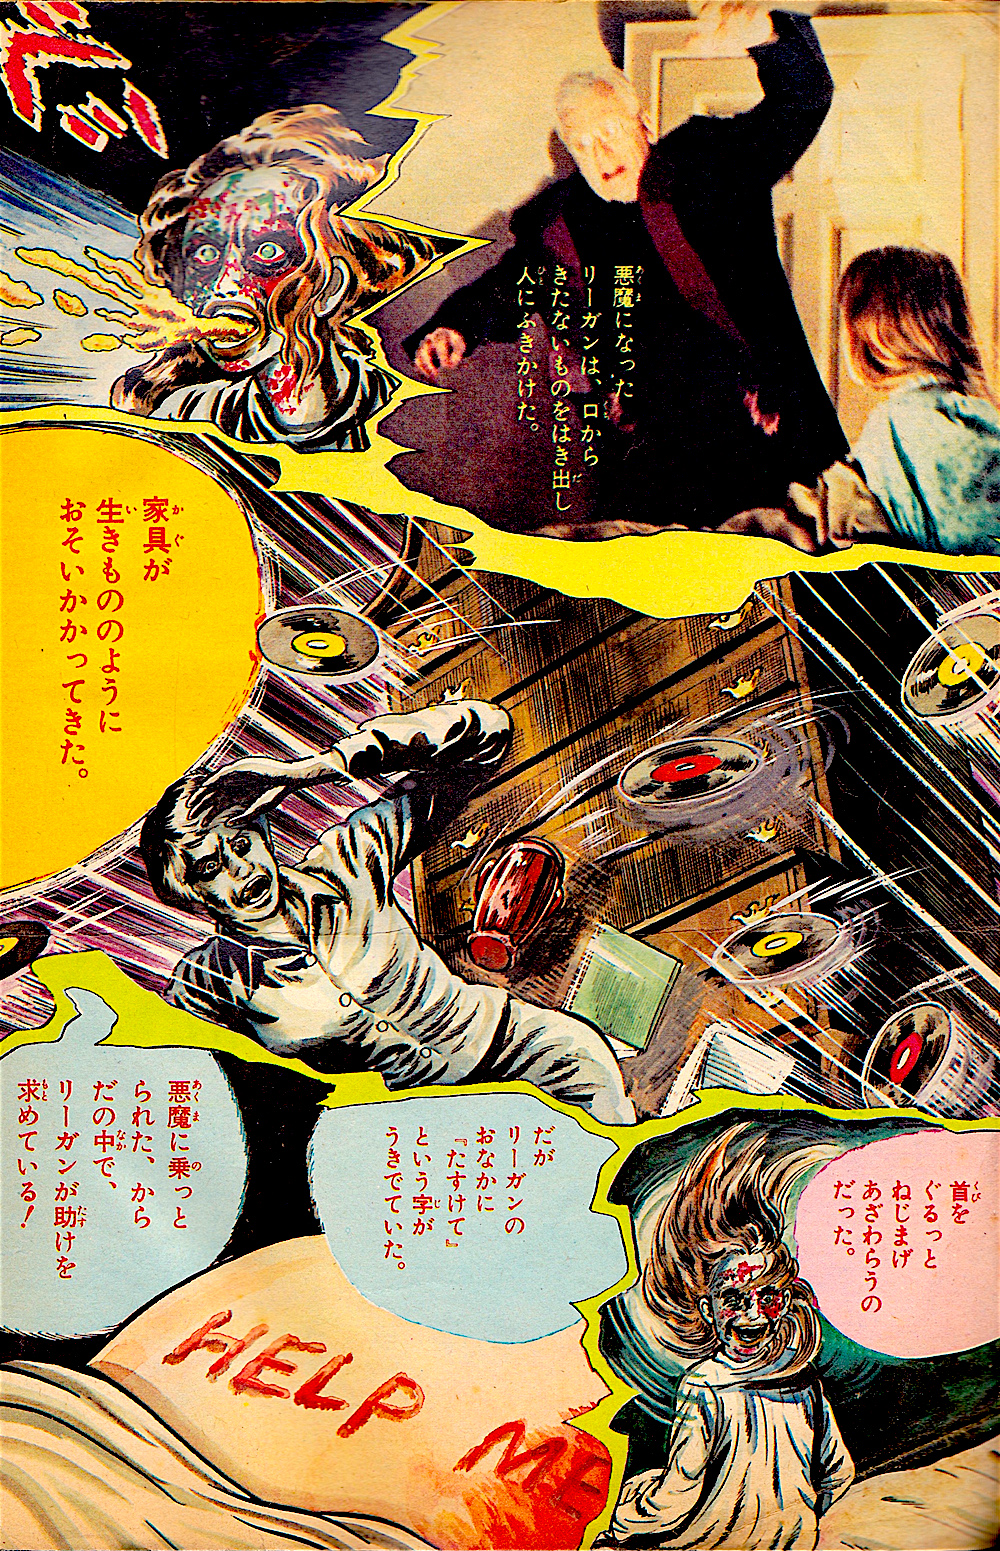 Kazuo Umezu - The Exorcist Comic, 1974